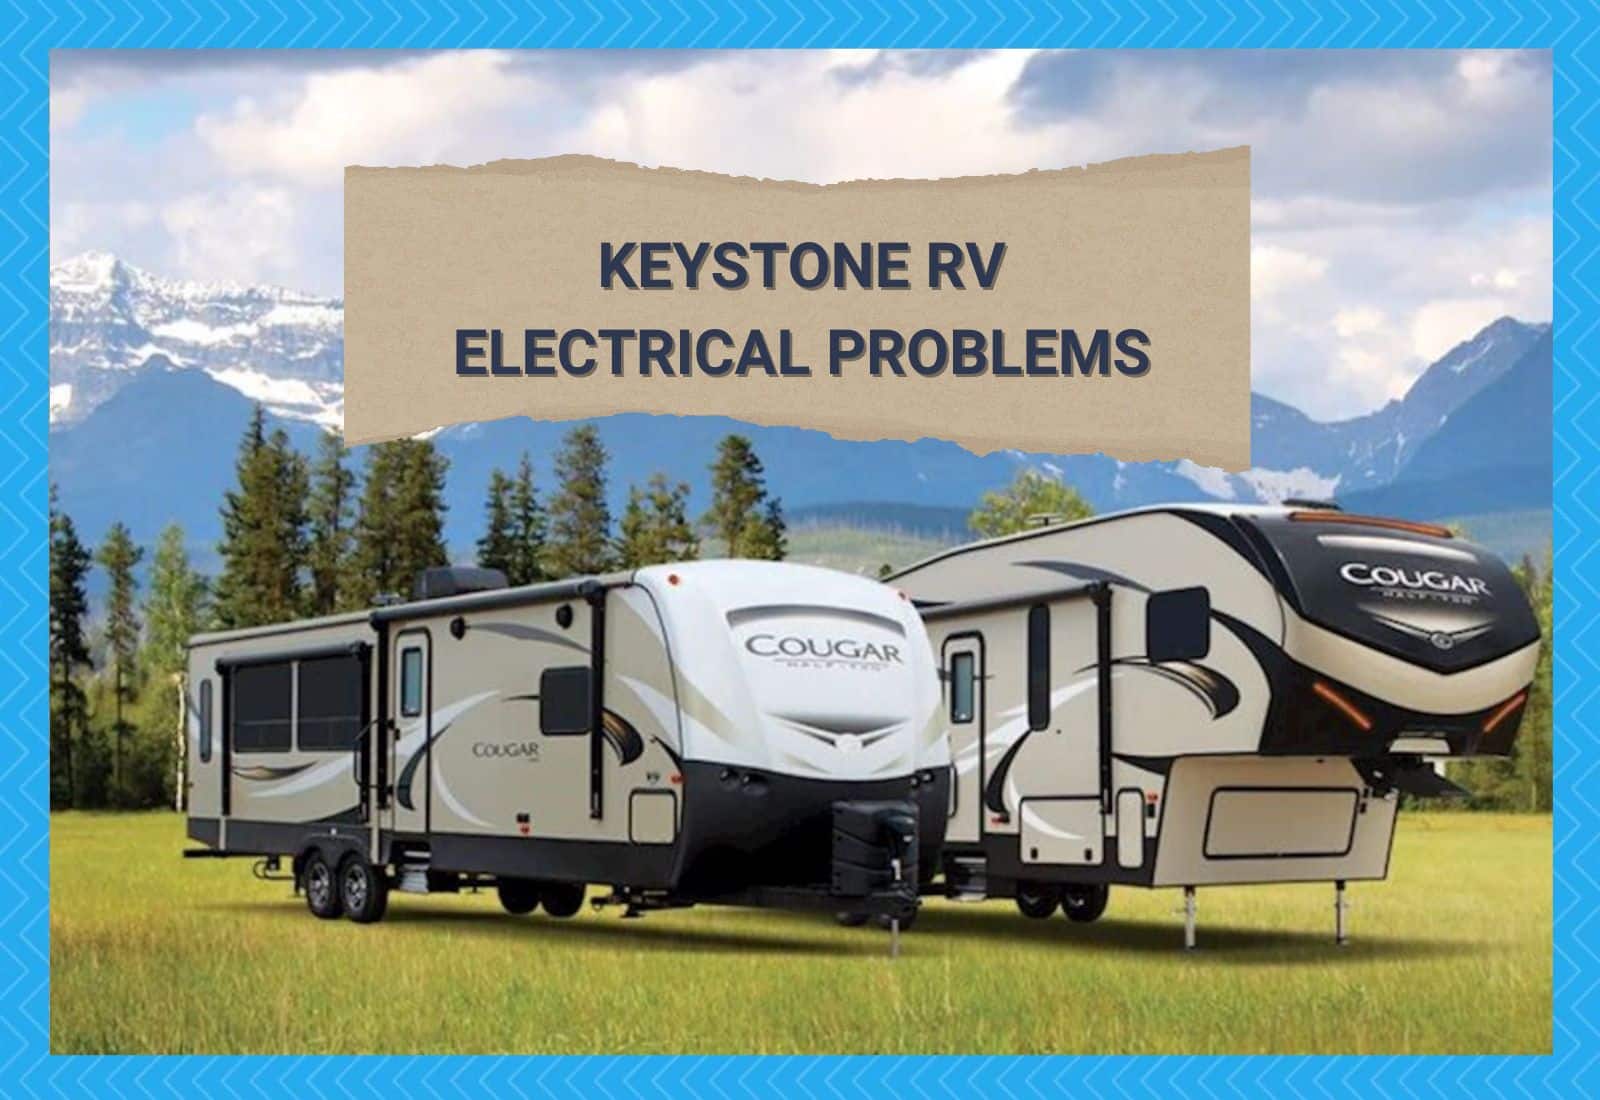 Keystone RV Electrical Problems